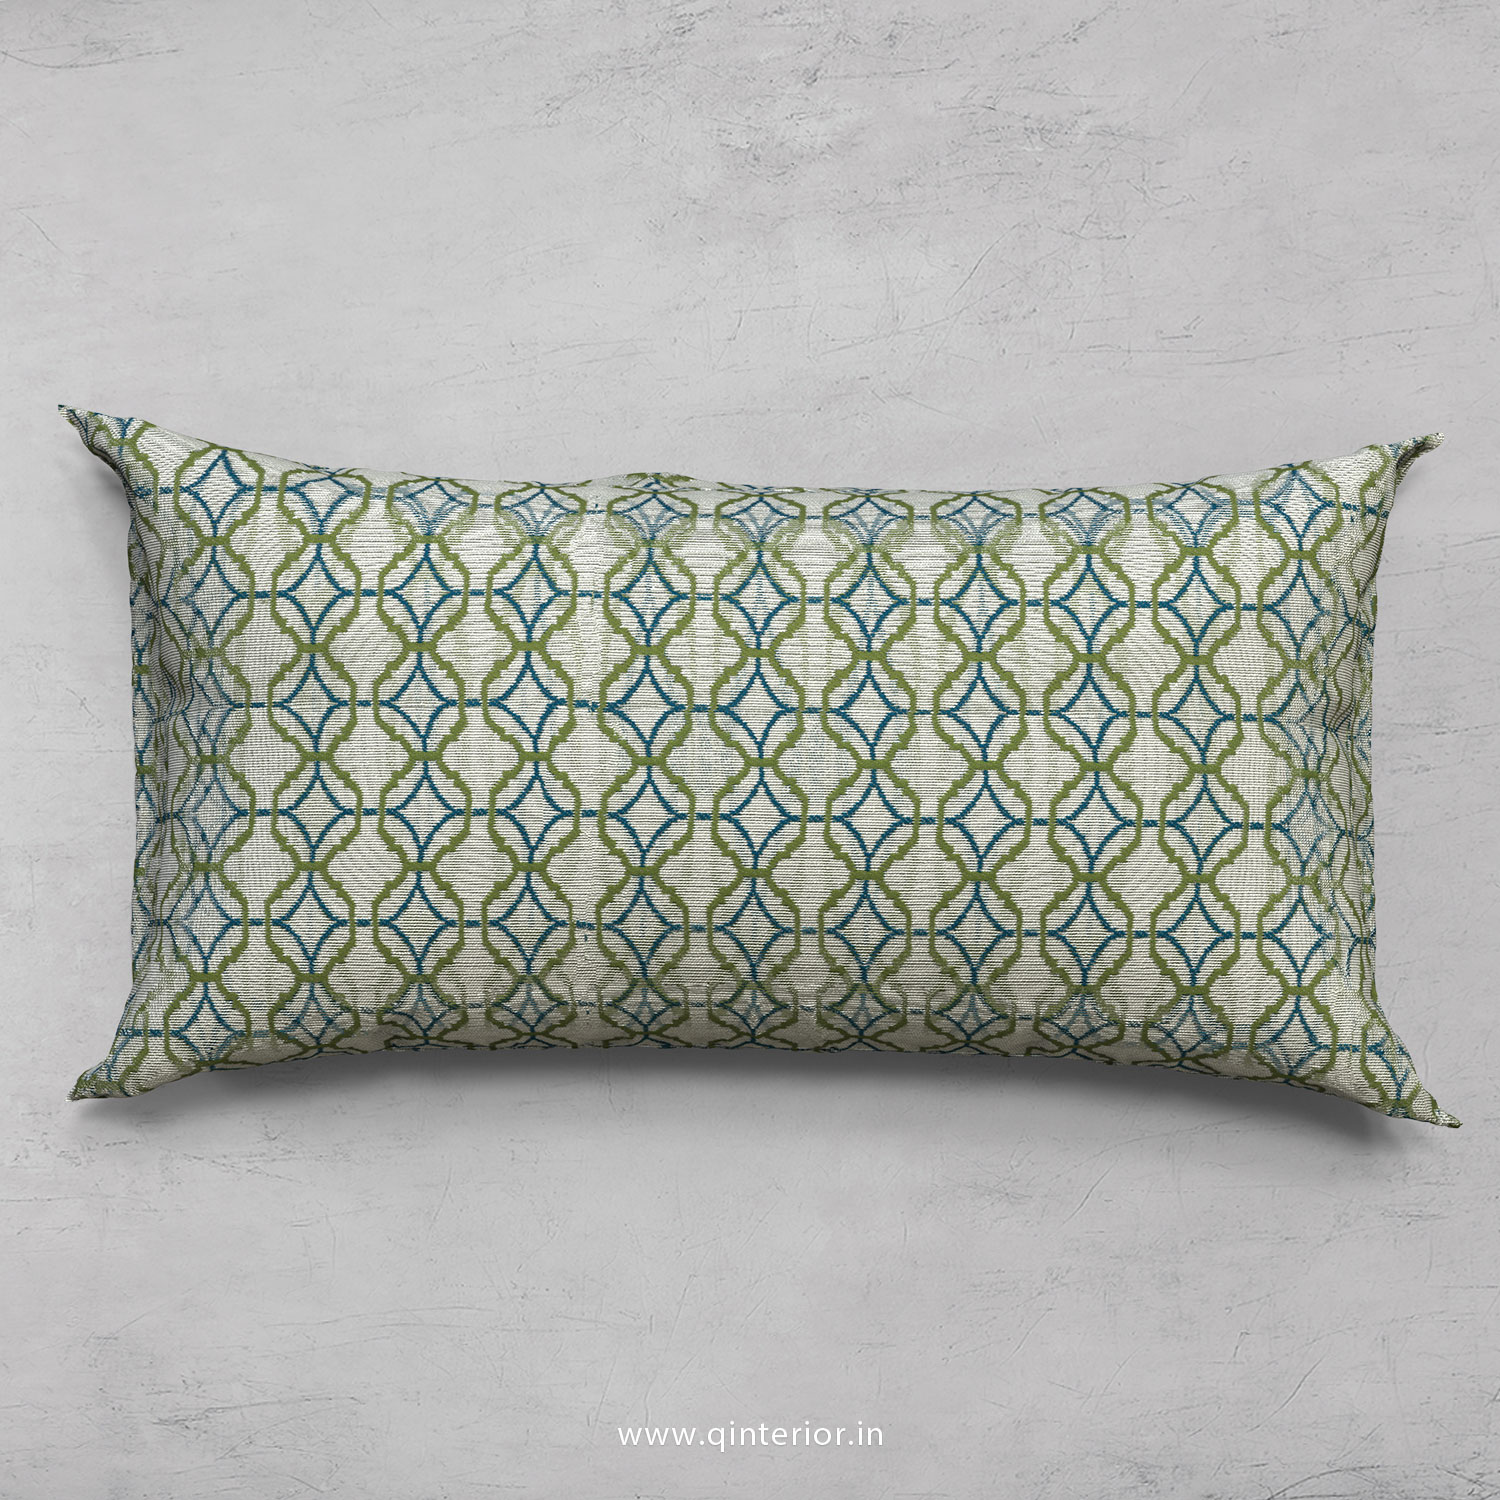 Cushion With Cushion Cover in Jacquard - CUS002 JQ21